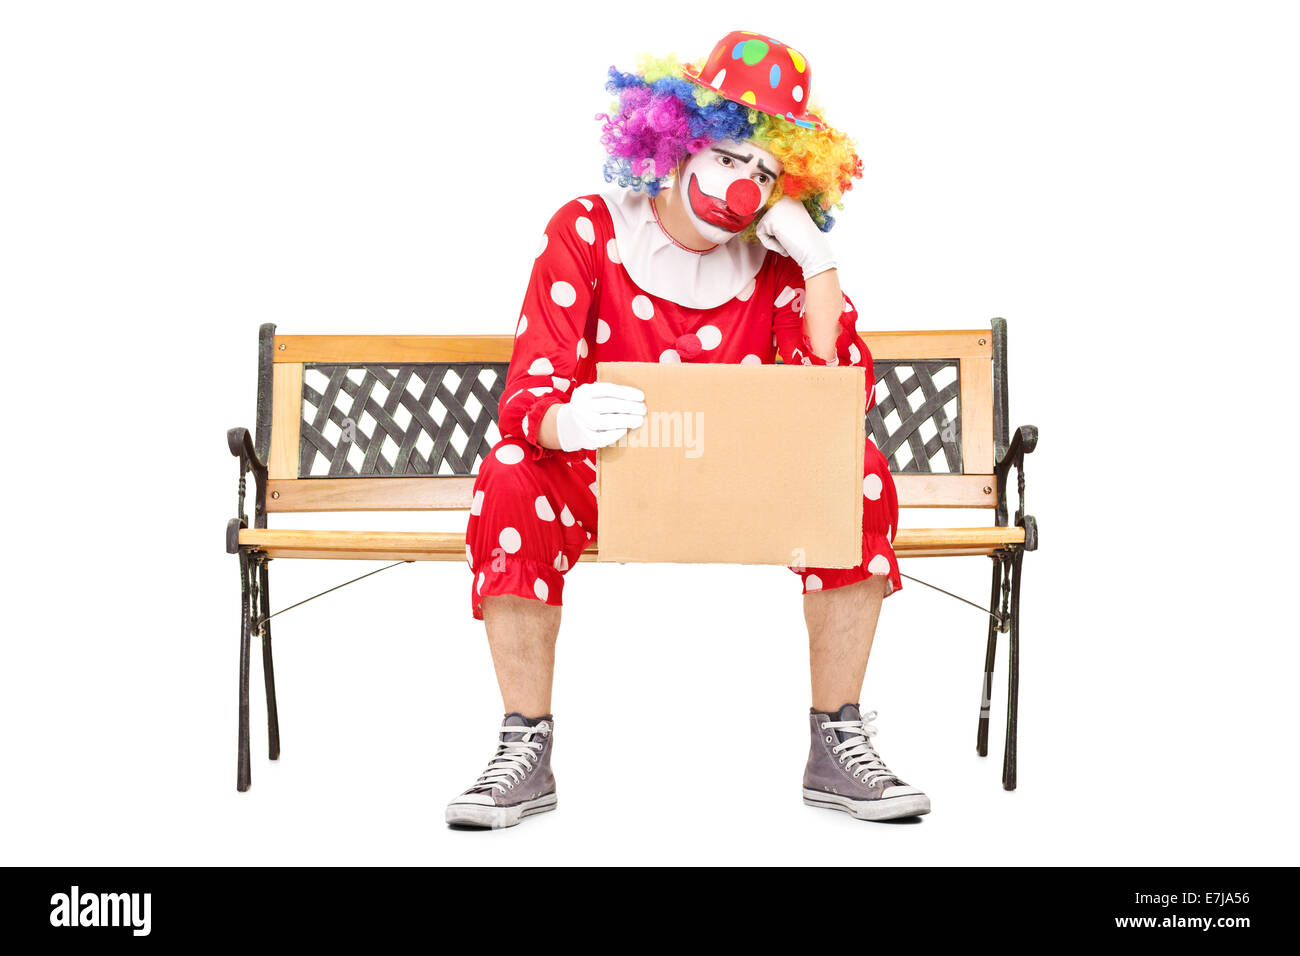 Triste clown maschile seduto su una panca in legno e in possesso di un cartone vuoto segno isolato su sfondo bianco Foto Stock